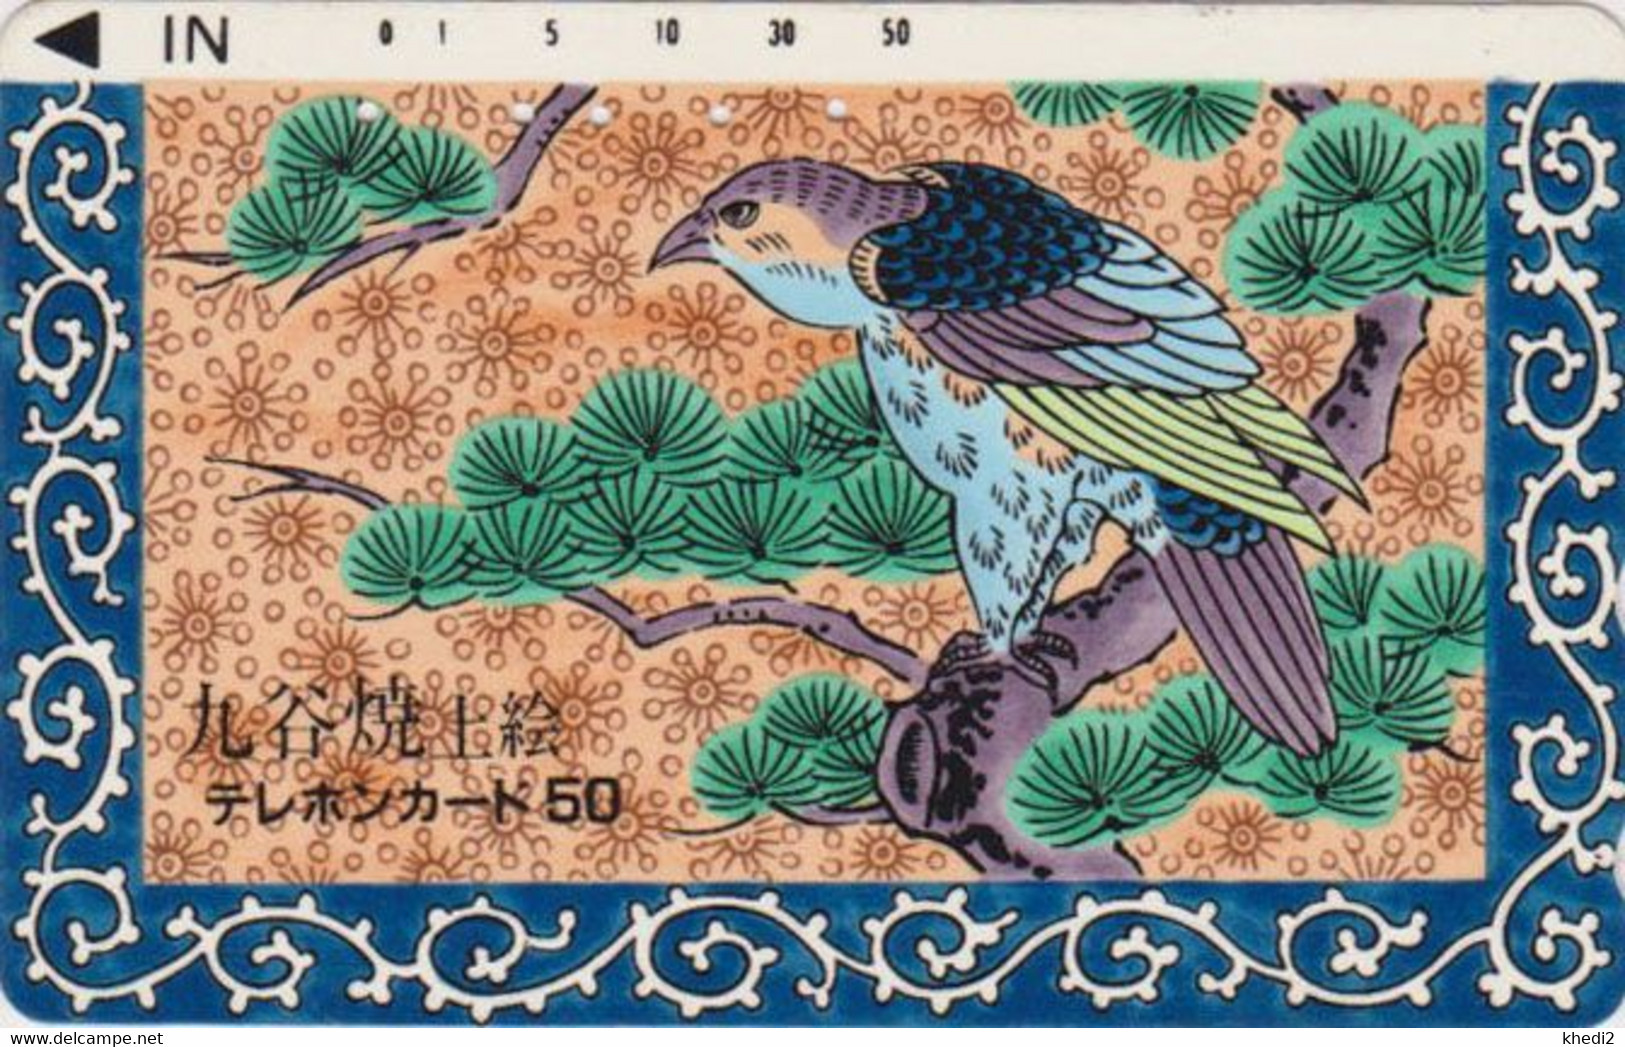 TC JAPON En LAQUE BLANCHE / 110-011 - ANIMAL - Oiseau Rapace AIGLE - EAGLE Bird JAPAN LACQUERED Phonecard - Águilas & Aves De Presa